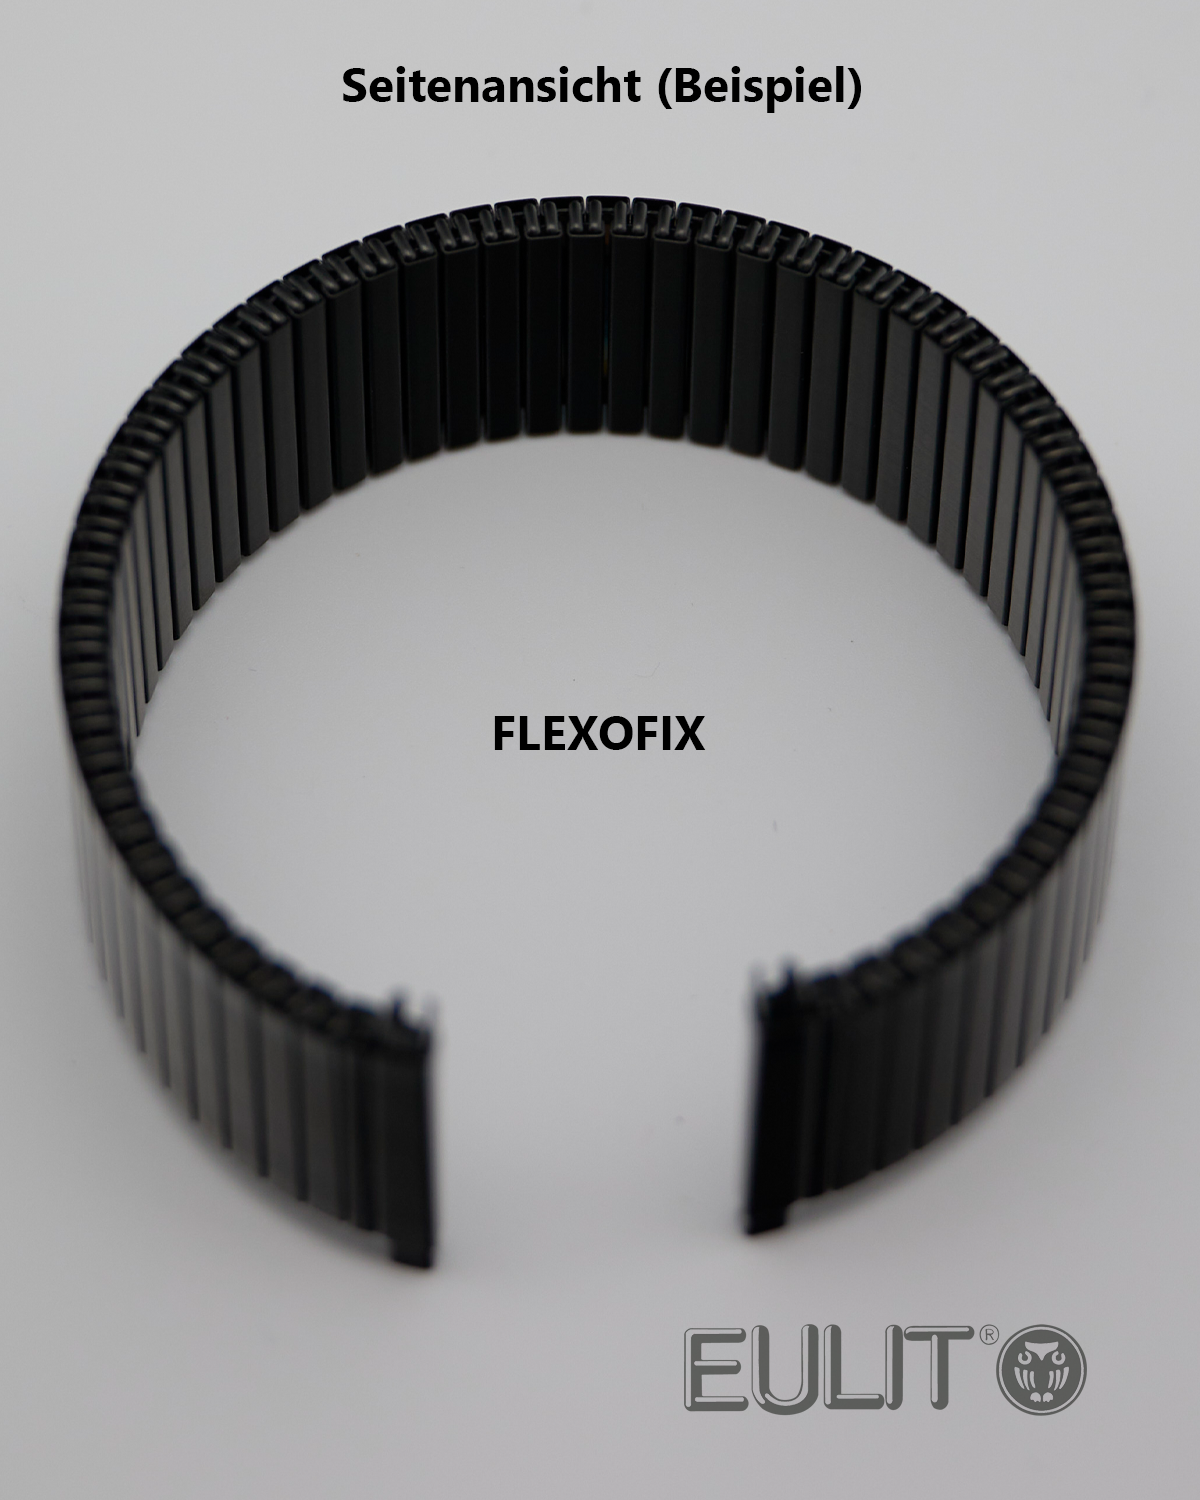 76-411181 EULIT FLEXOFIX 18-20 mm Schwarz